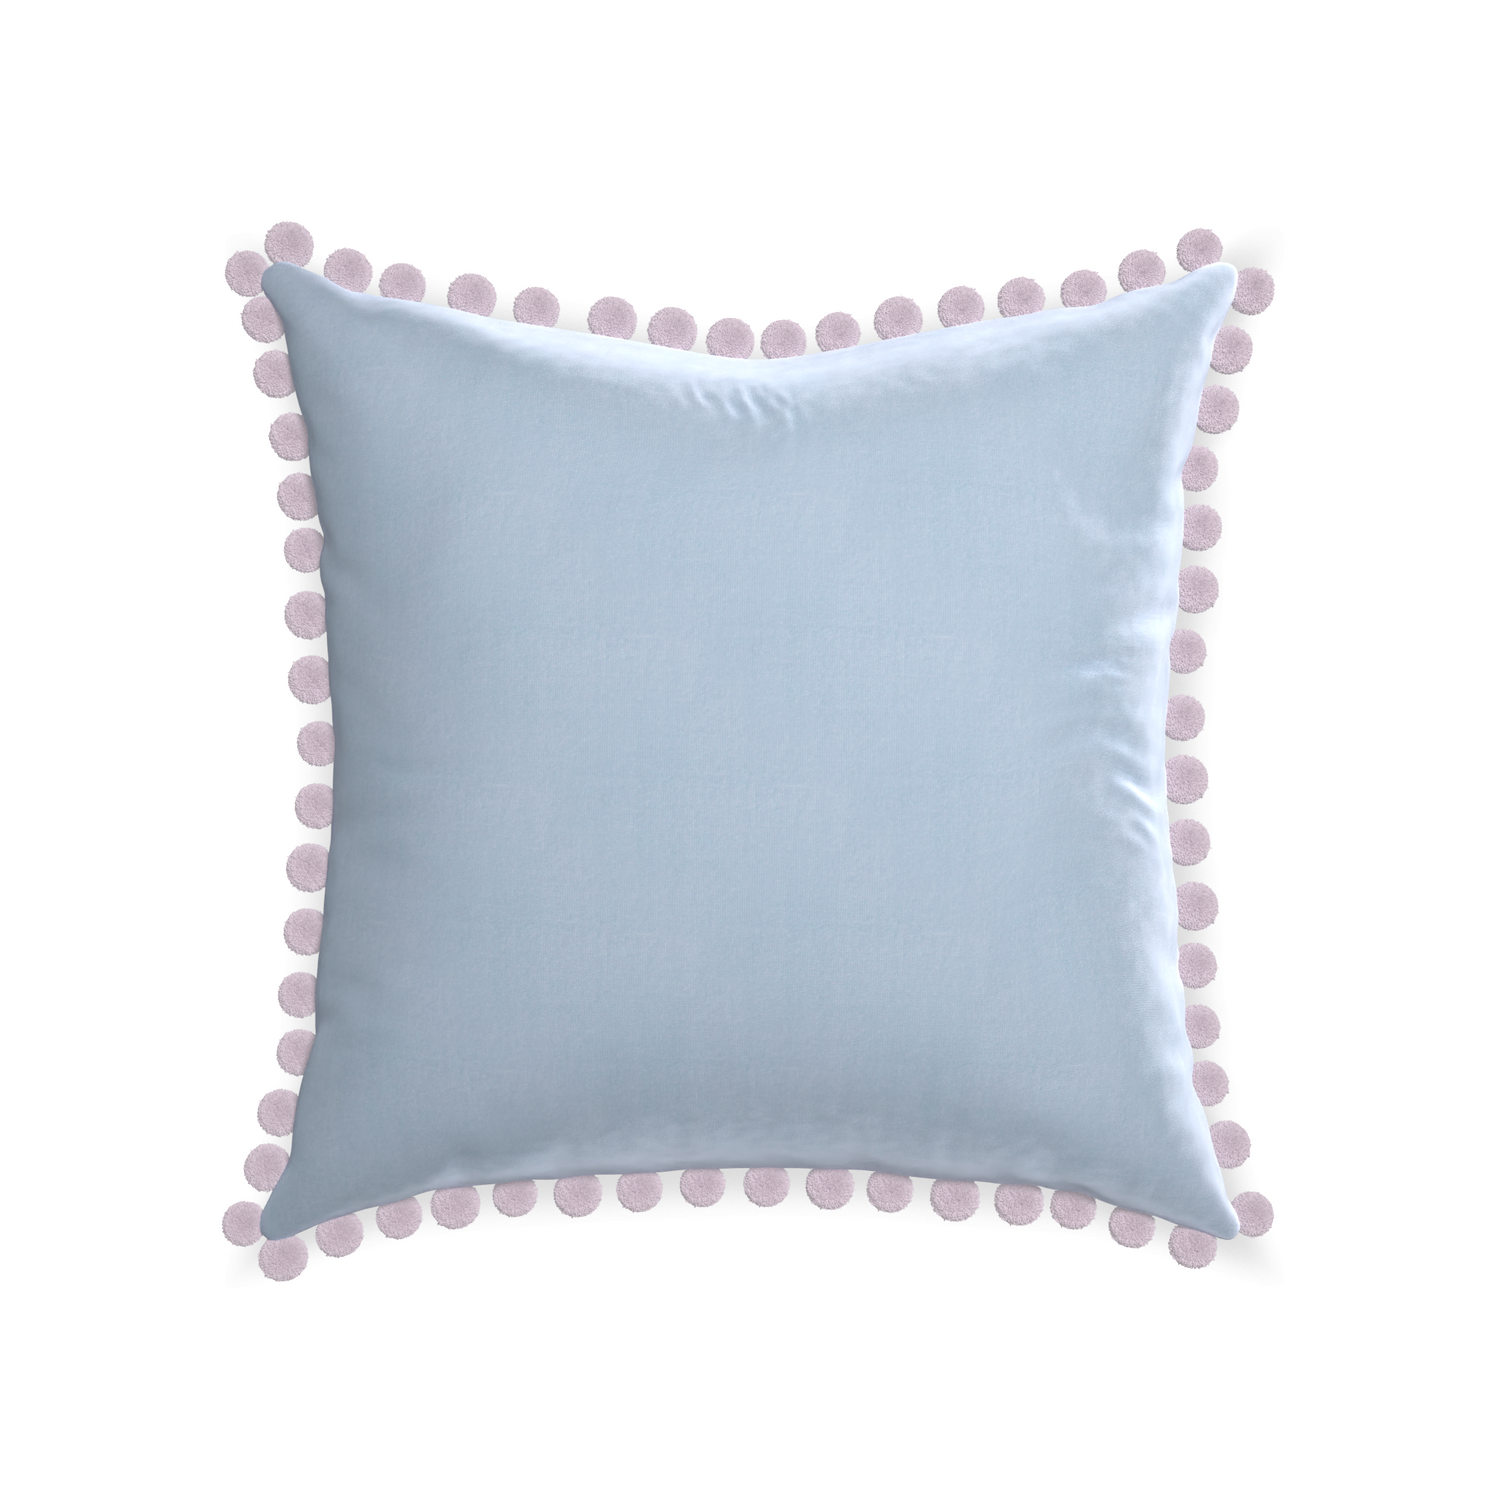 22-square sky velvet custom pillow with l on white background